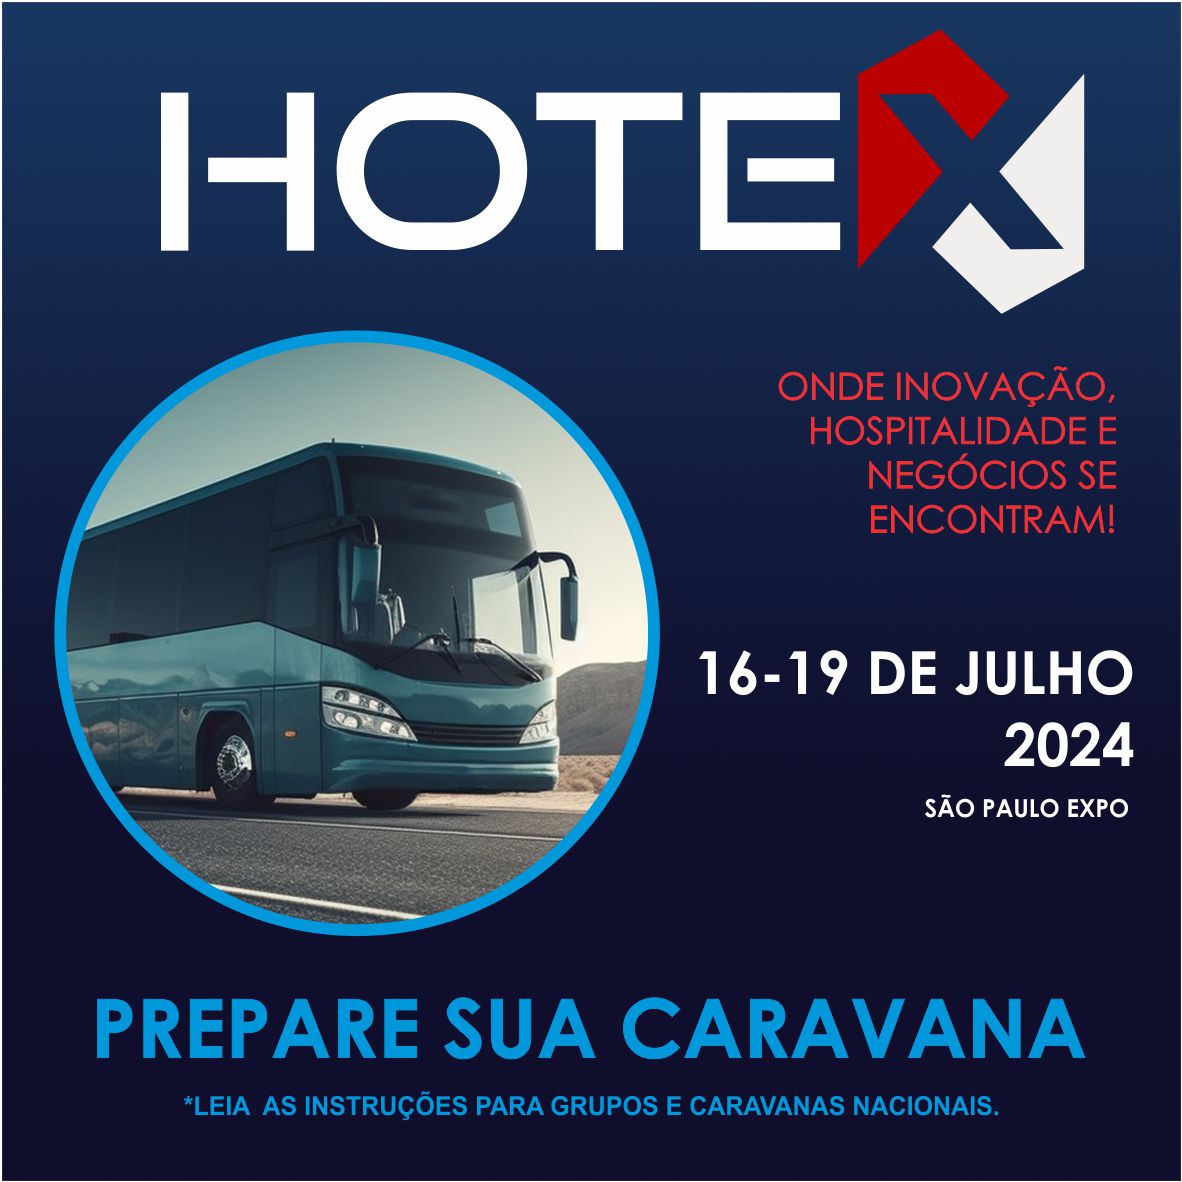 CARAVANAS HOTEX 2024: CONFIRA O PASSO A PASSO PARA ACELERAR A ENTRADA DO GRUPO OU CARAVANA NA FEIRA